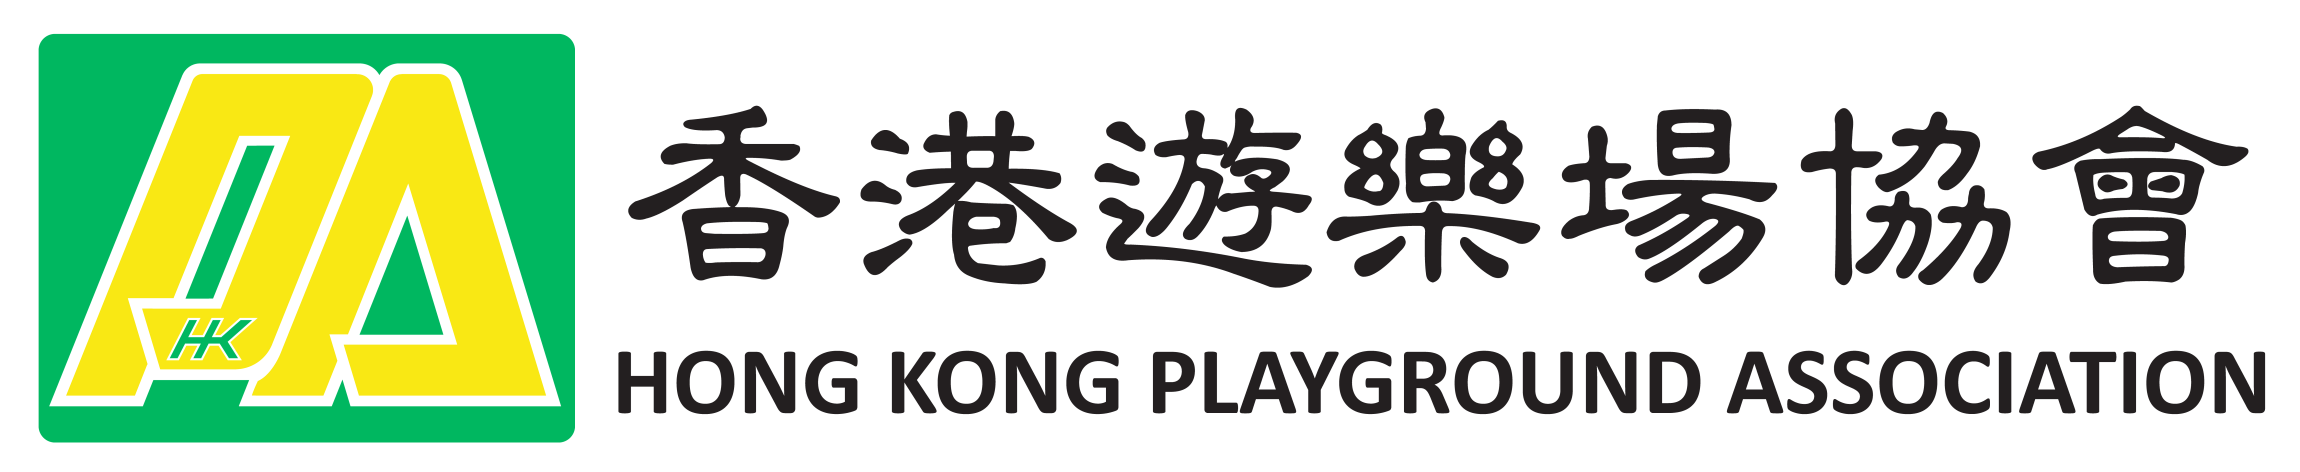 本页图片/档案 - hkpa_logo (1)